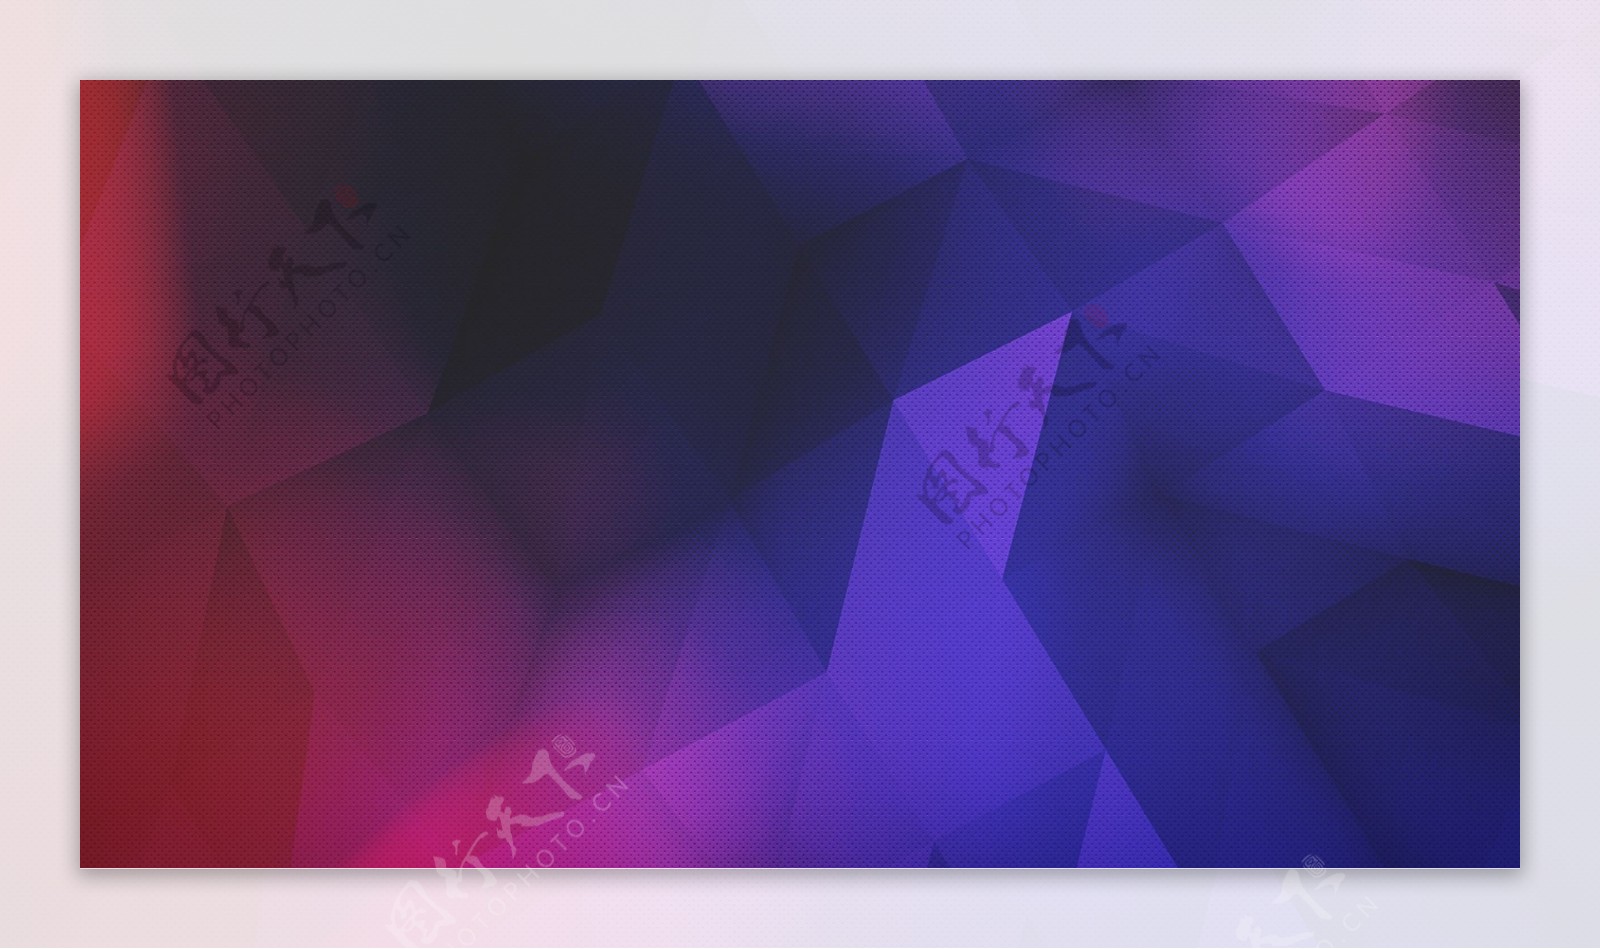 紫蓝水晶分割大图背景设计素材图片